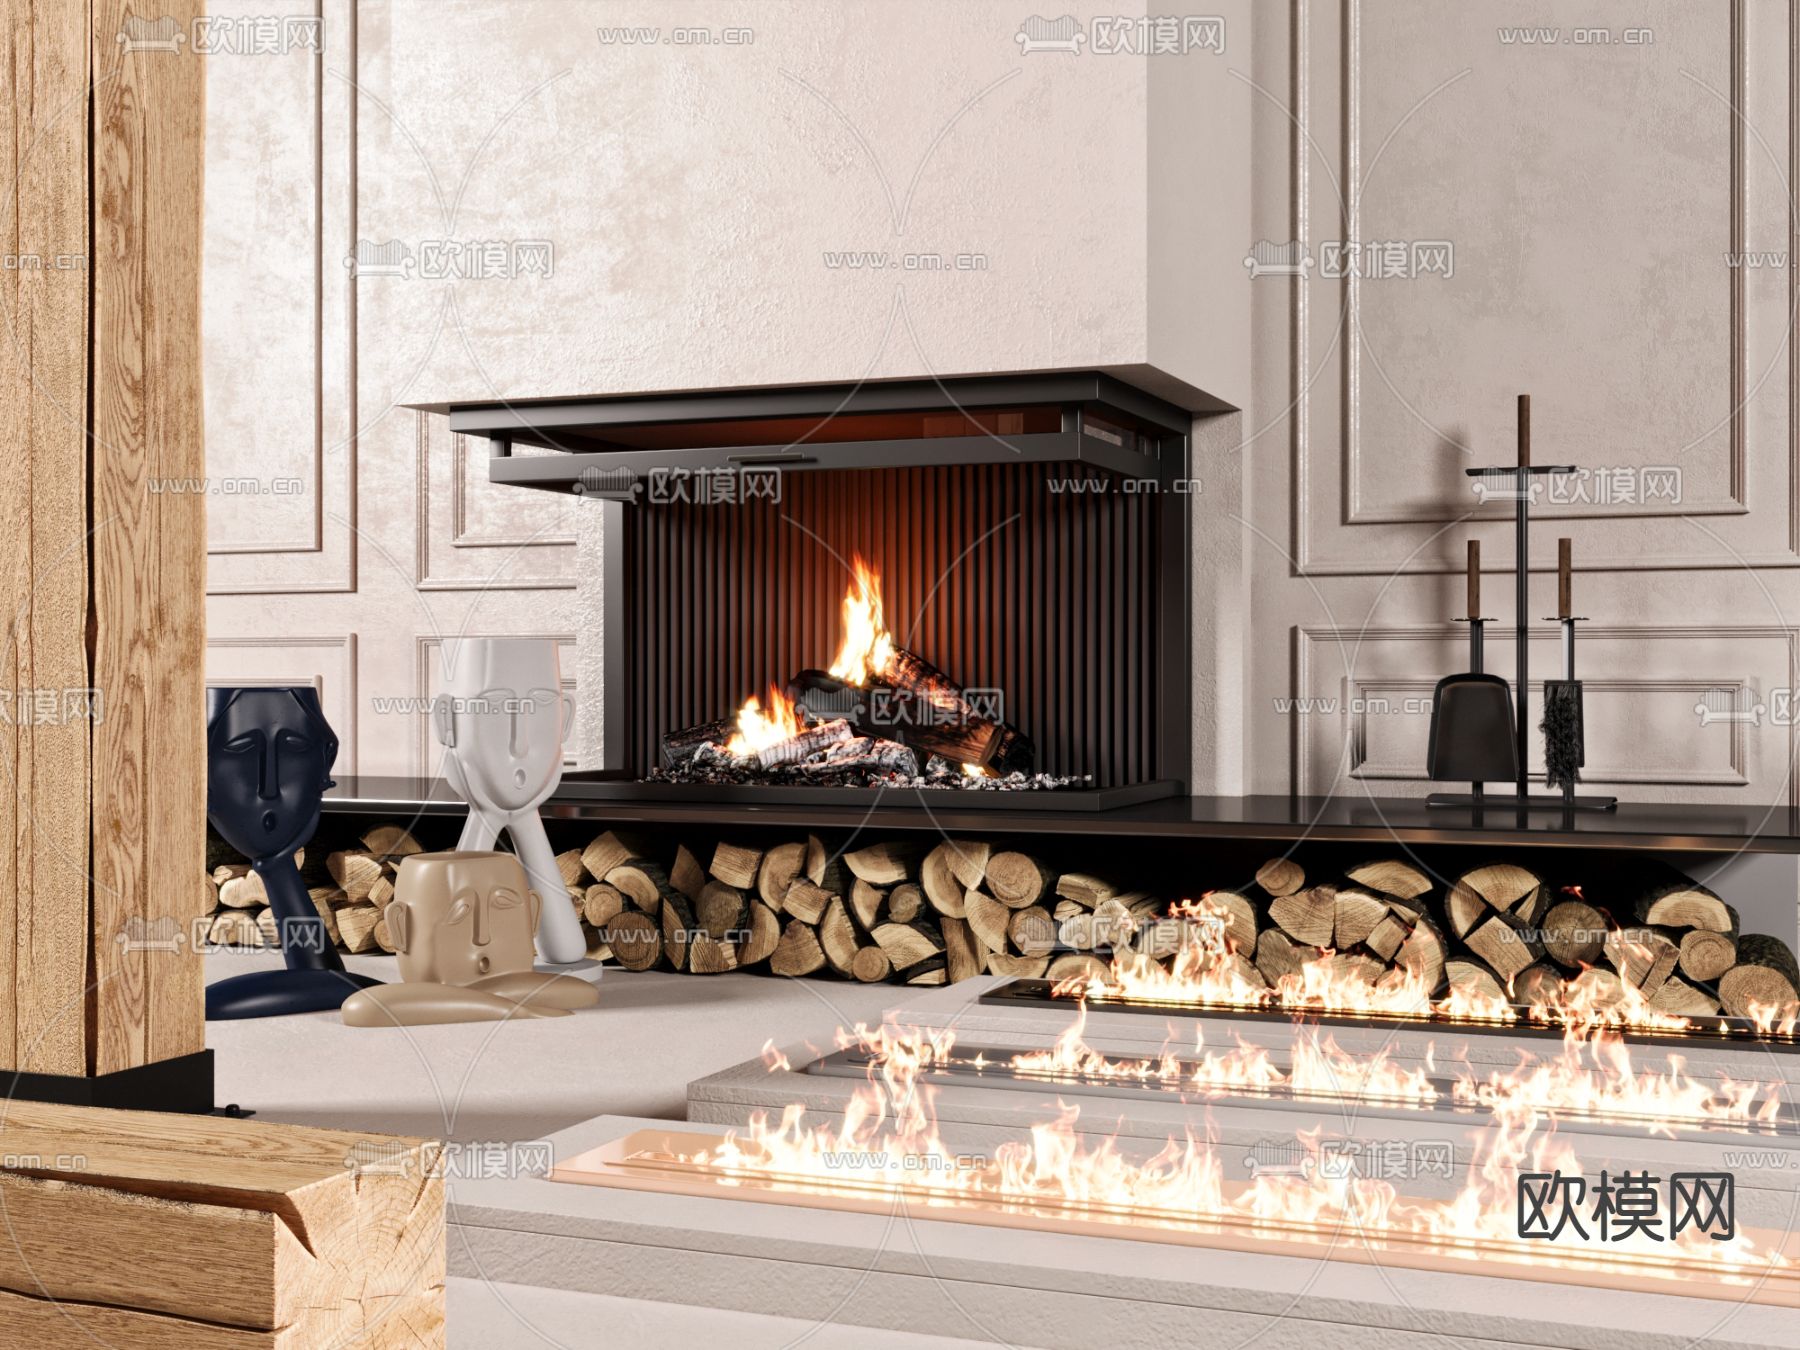 【德雷进口壁炉-最新案例】汇集欧洲顶级真火壁炉品牌,为您提供安全的火焰